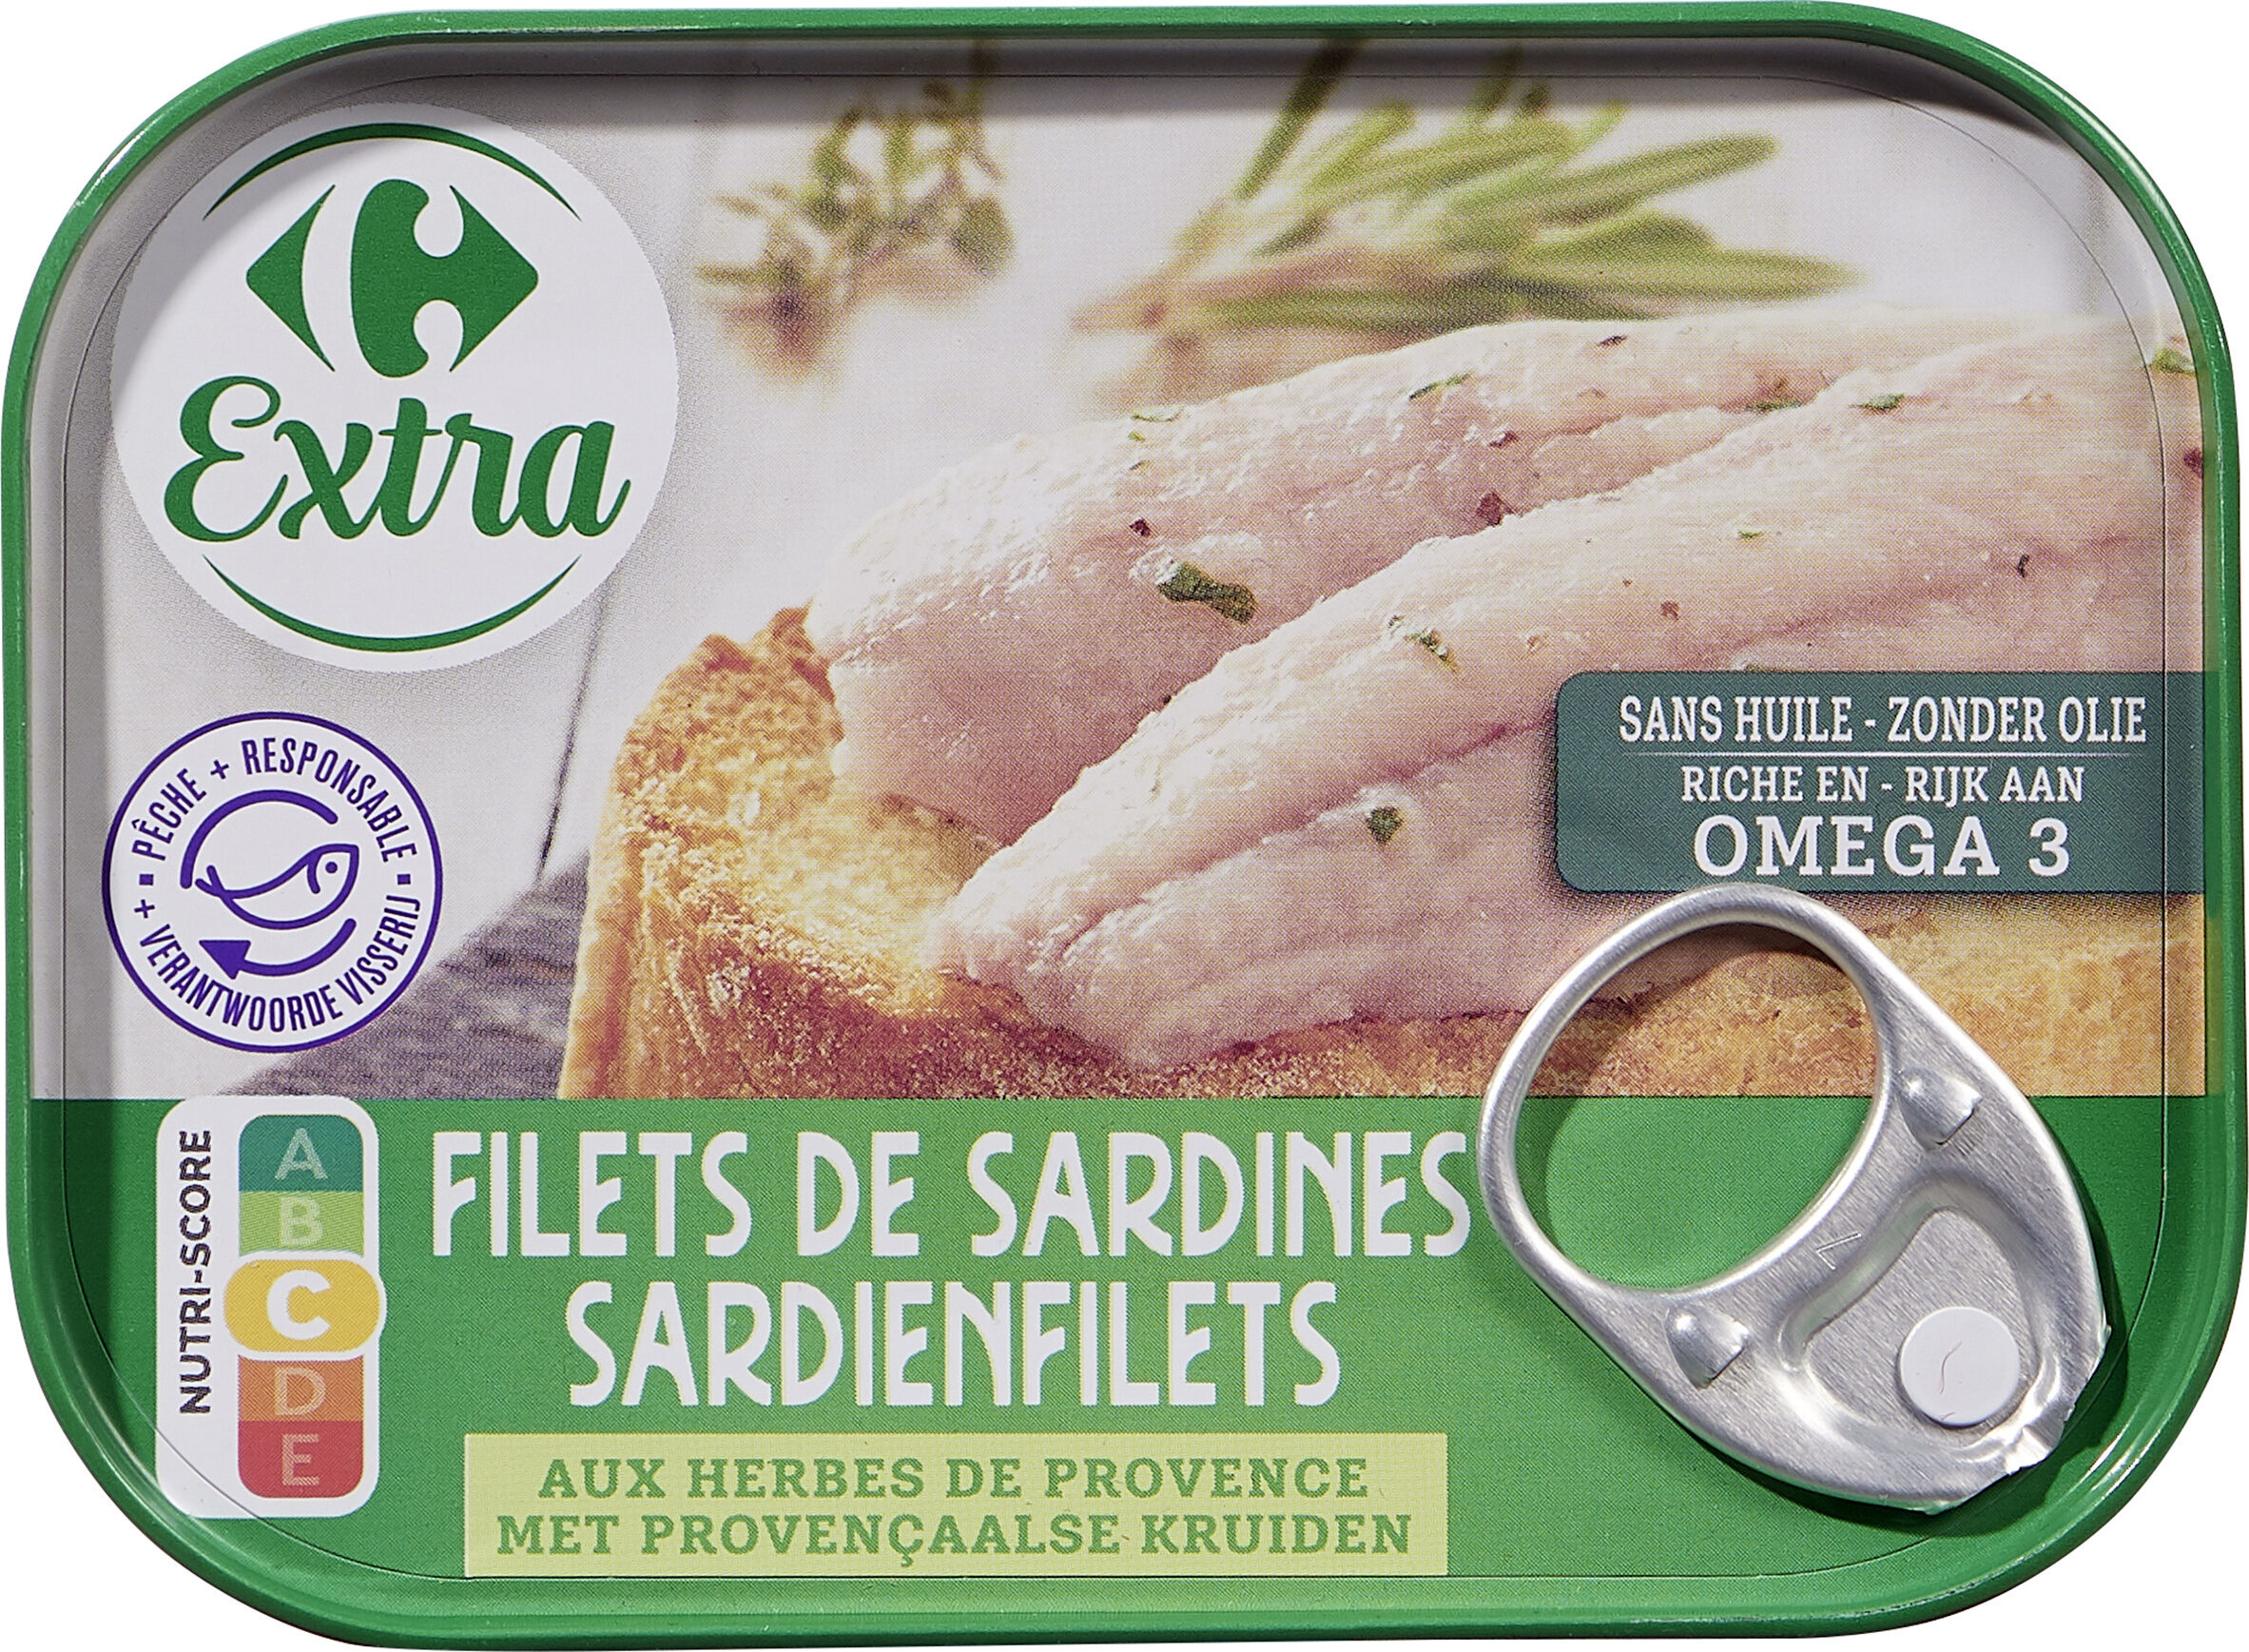 Filets de sardines aux herbes de provence - Producto - fr